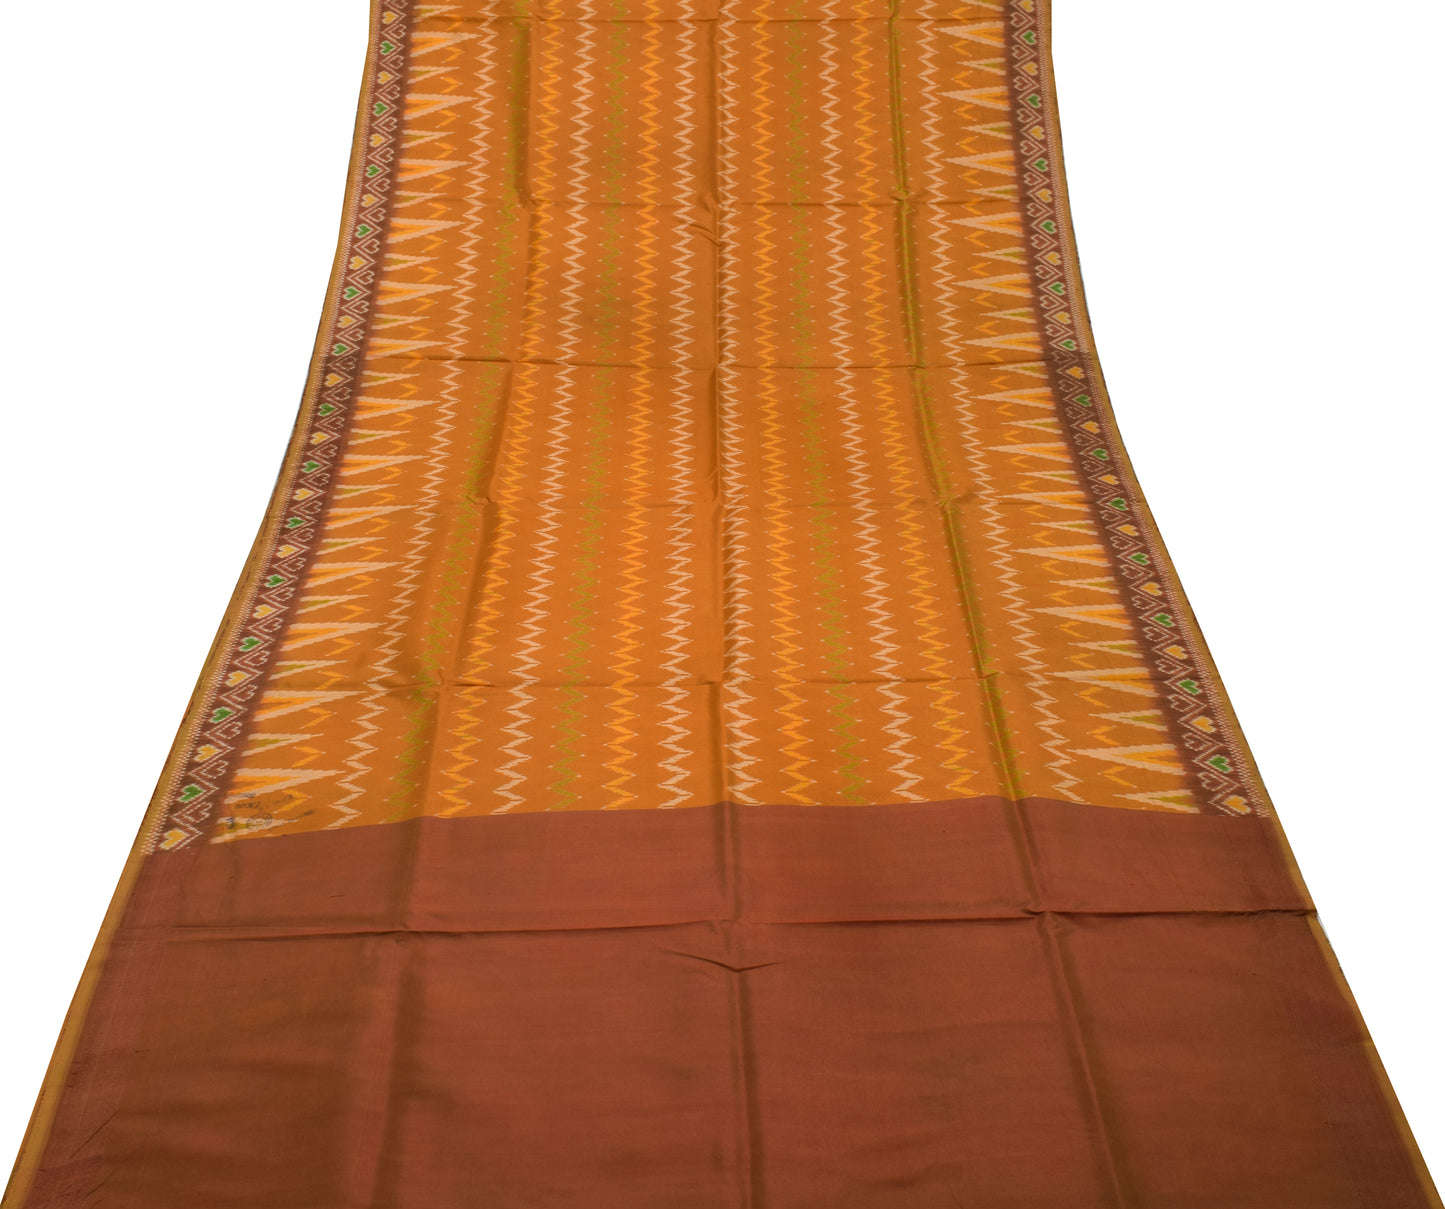 Sushila Vintage Indian Saree Blend Silk Hand Woven Ikat Patola Sari Craft Fabric